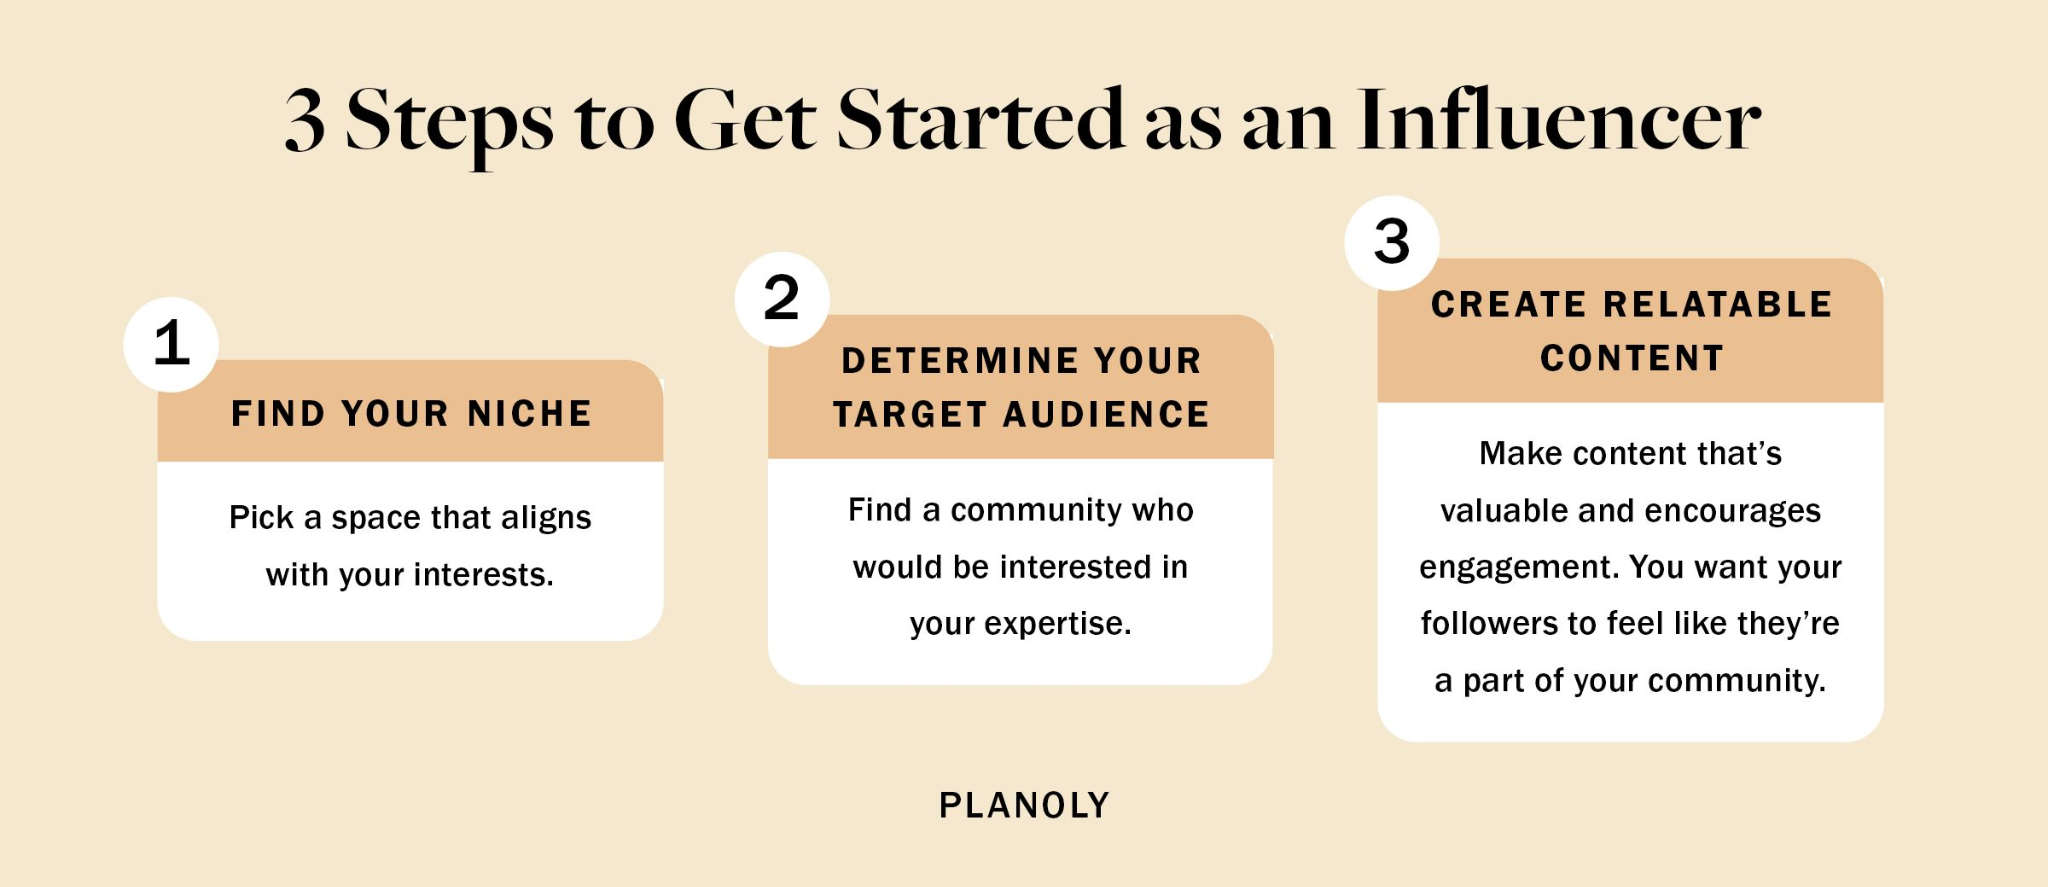 How to become a social media influencer